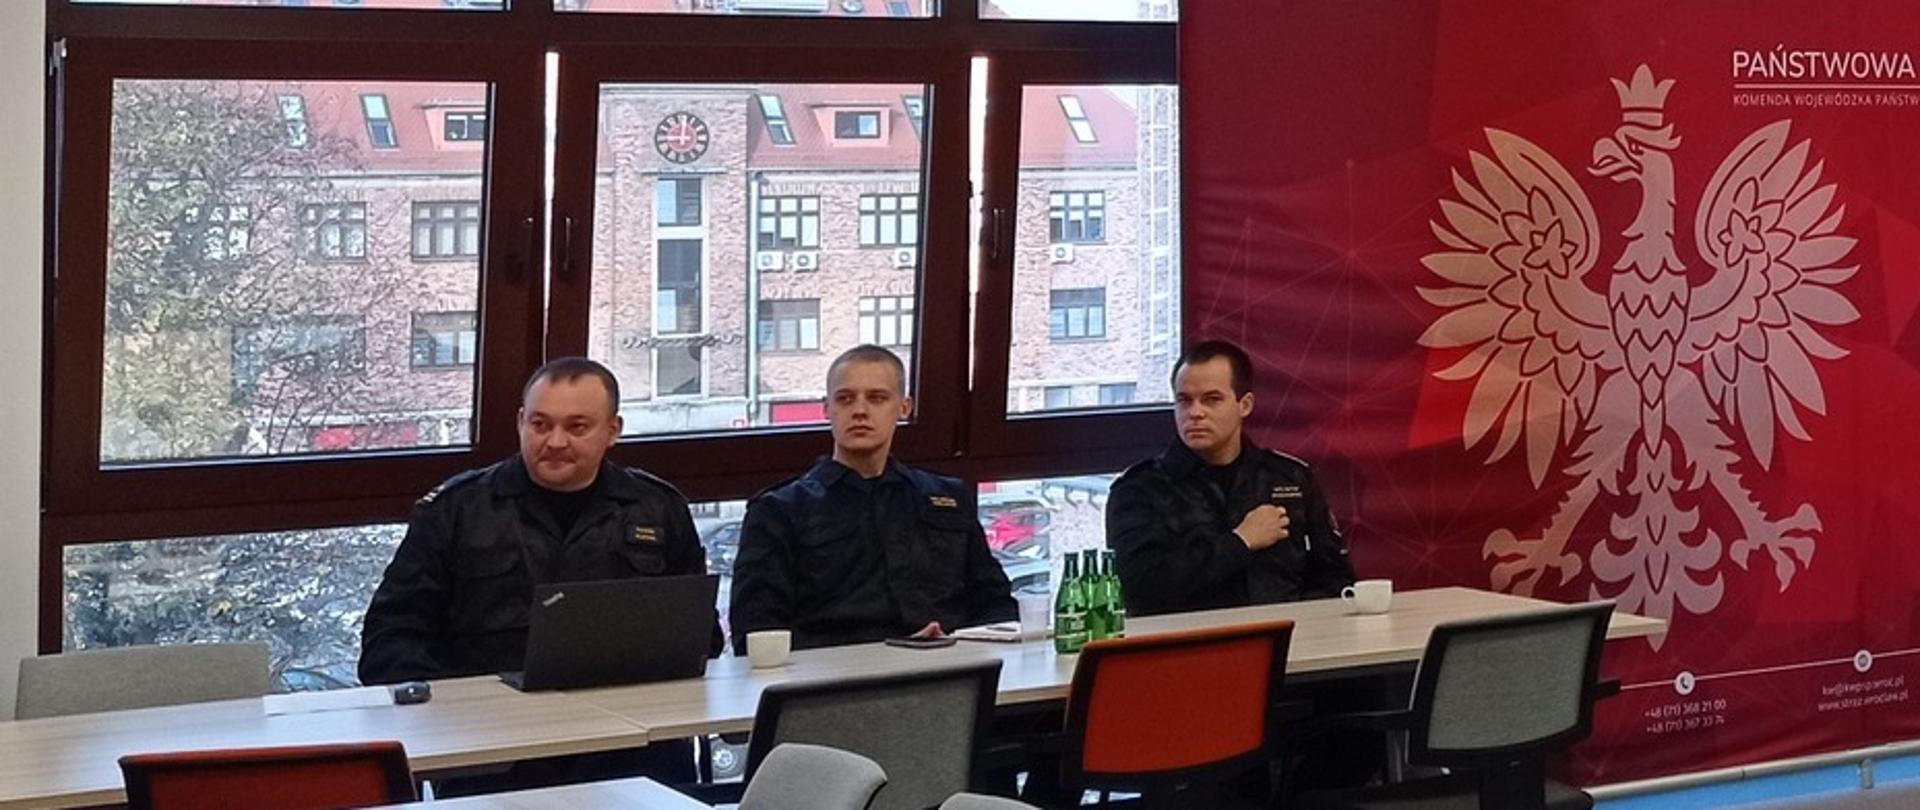 grupa strażaków w czarnych mundurach siedzi przy stołach, za nimi okna, z boku czerwona ścianka z orłem